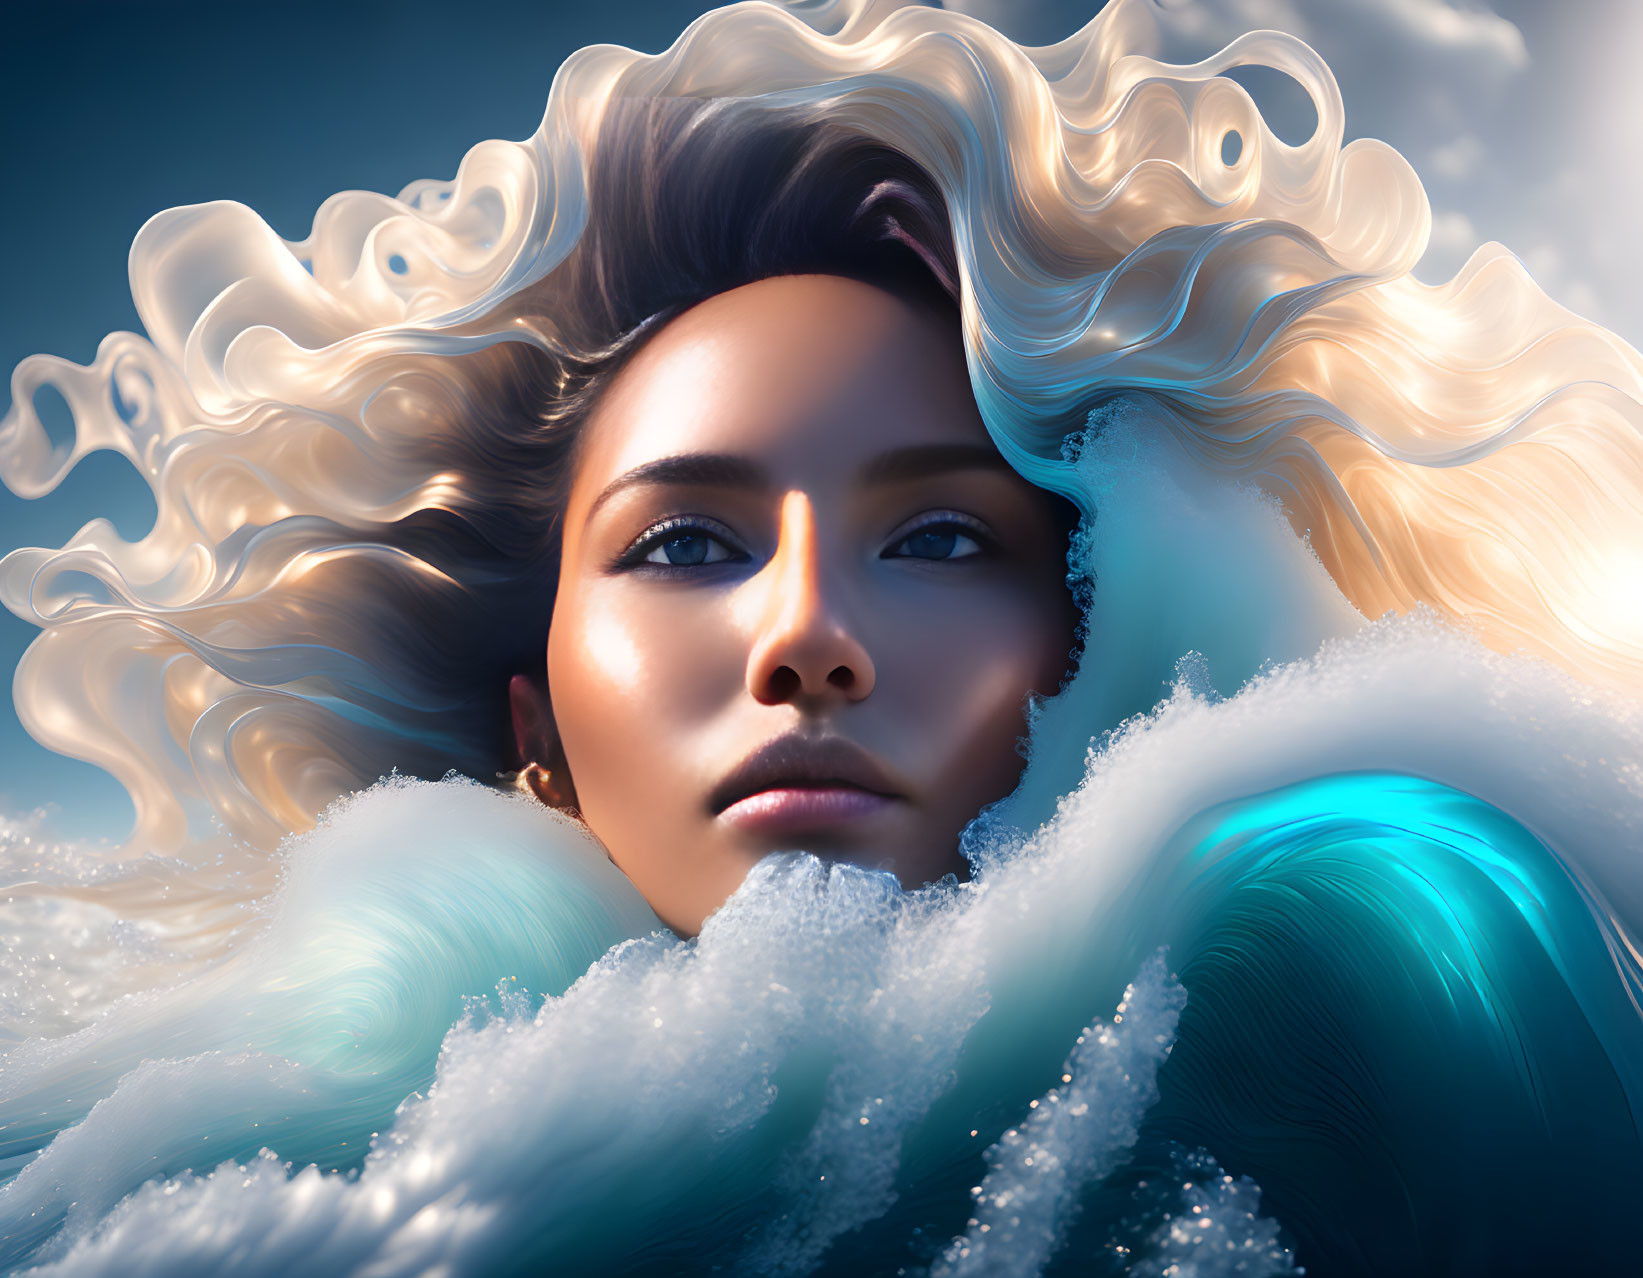 Digital artwork: Woman's hair merges with ocean waves under cloudy sky